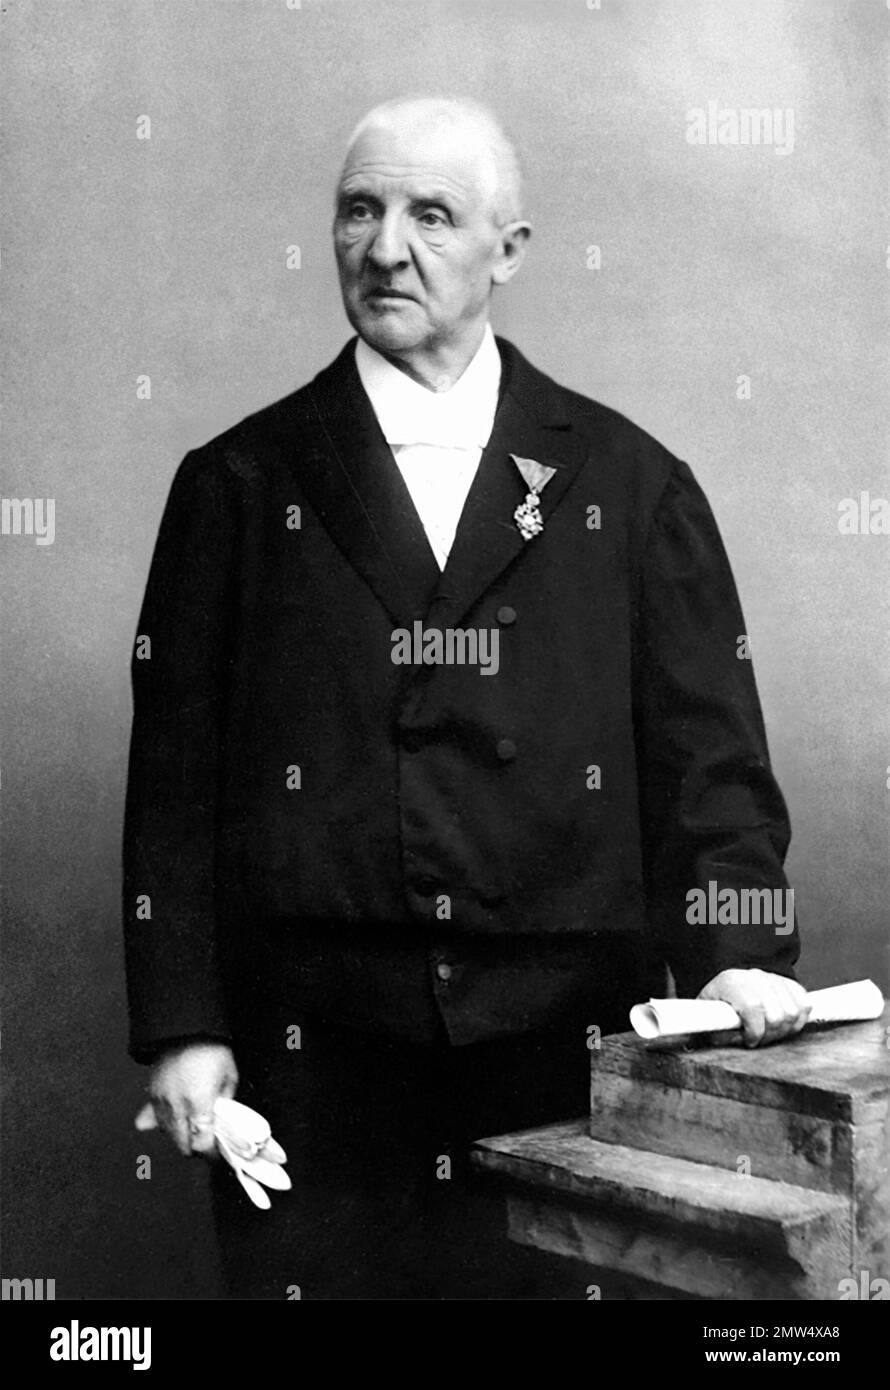 Anton Bruckner. Portrait du compositeur autrichien Josef Anton Bruckner (1824-1896) par Otto Schmidt, vers 1886-96 Banque D'Images